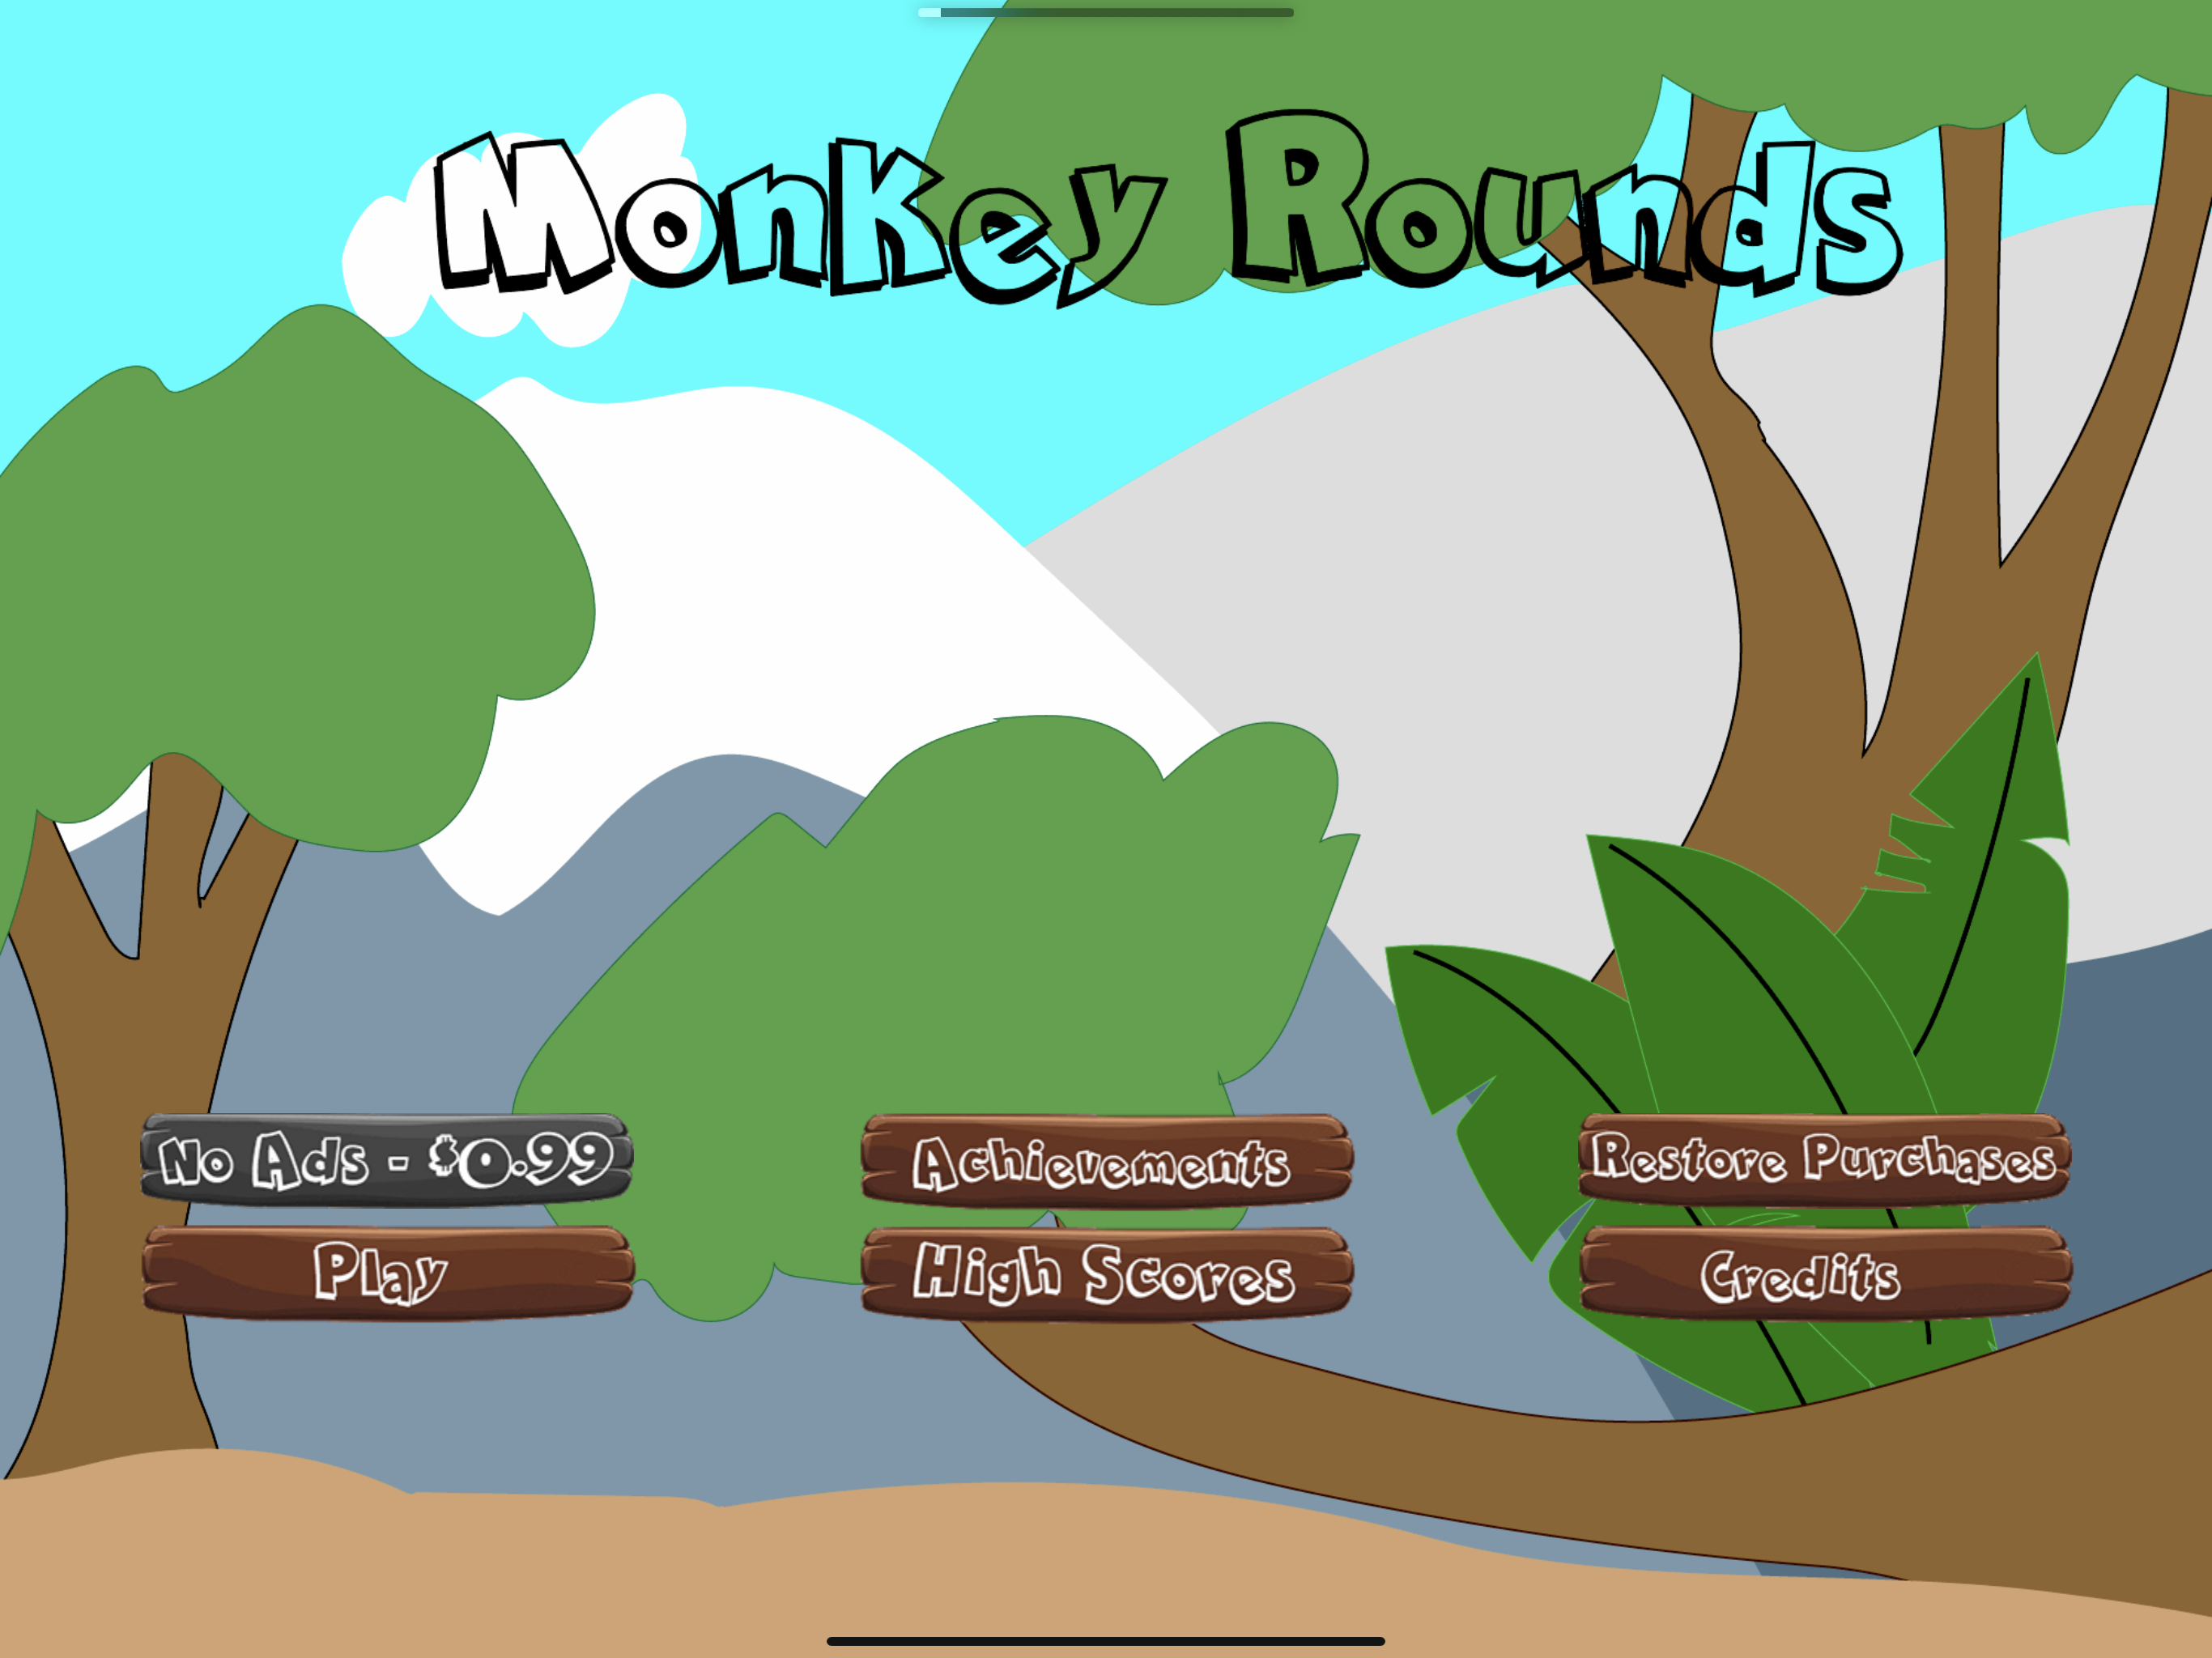 Monkey Rounds